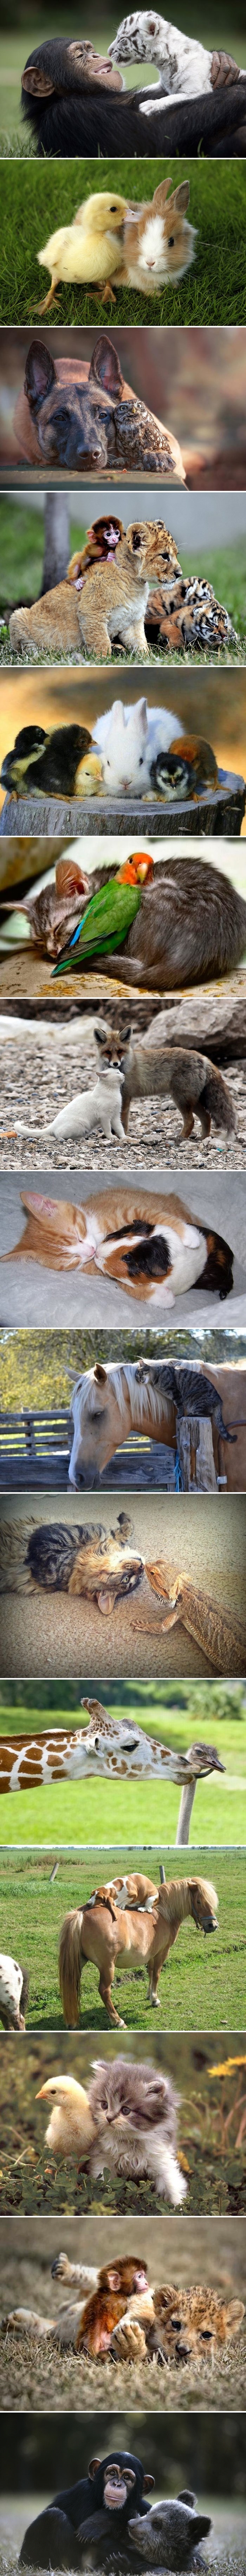 15 najslađih slika životinjskih prijateljstava koje nitko nije očekivao